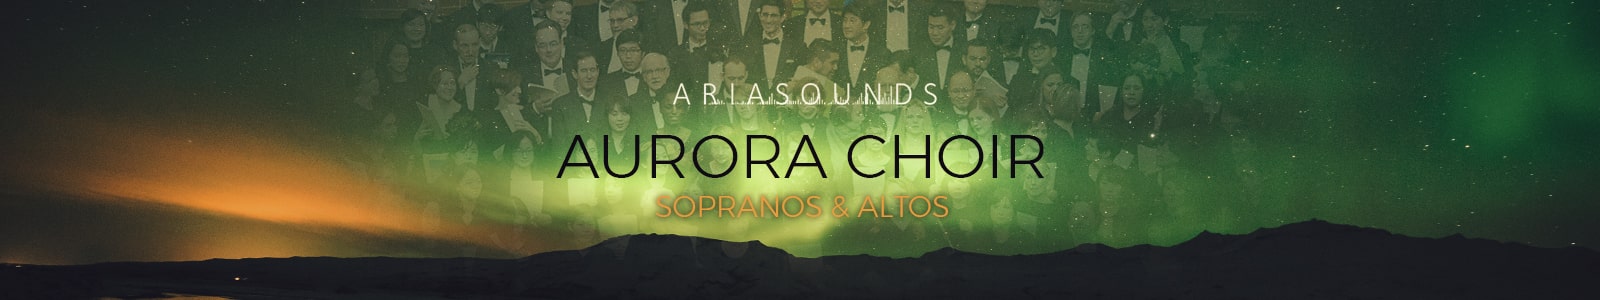 aurora choir